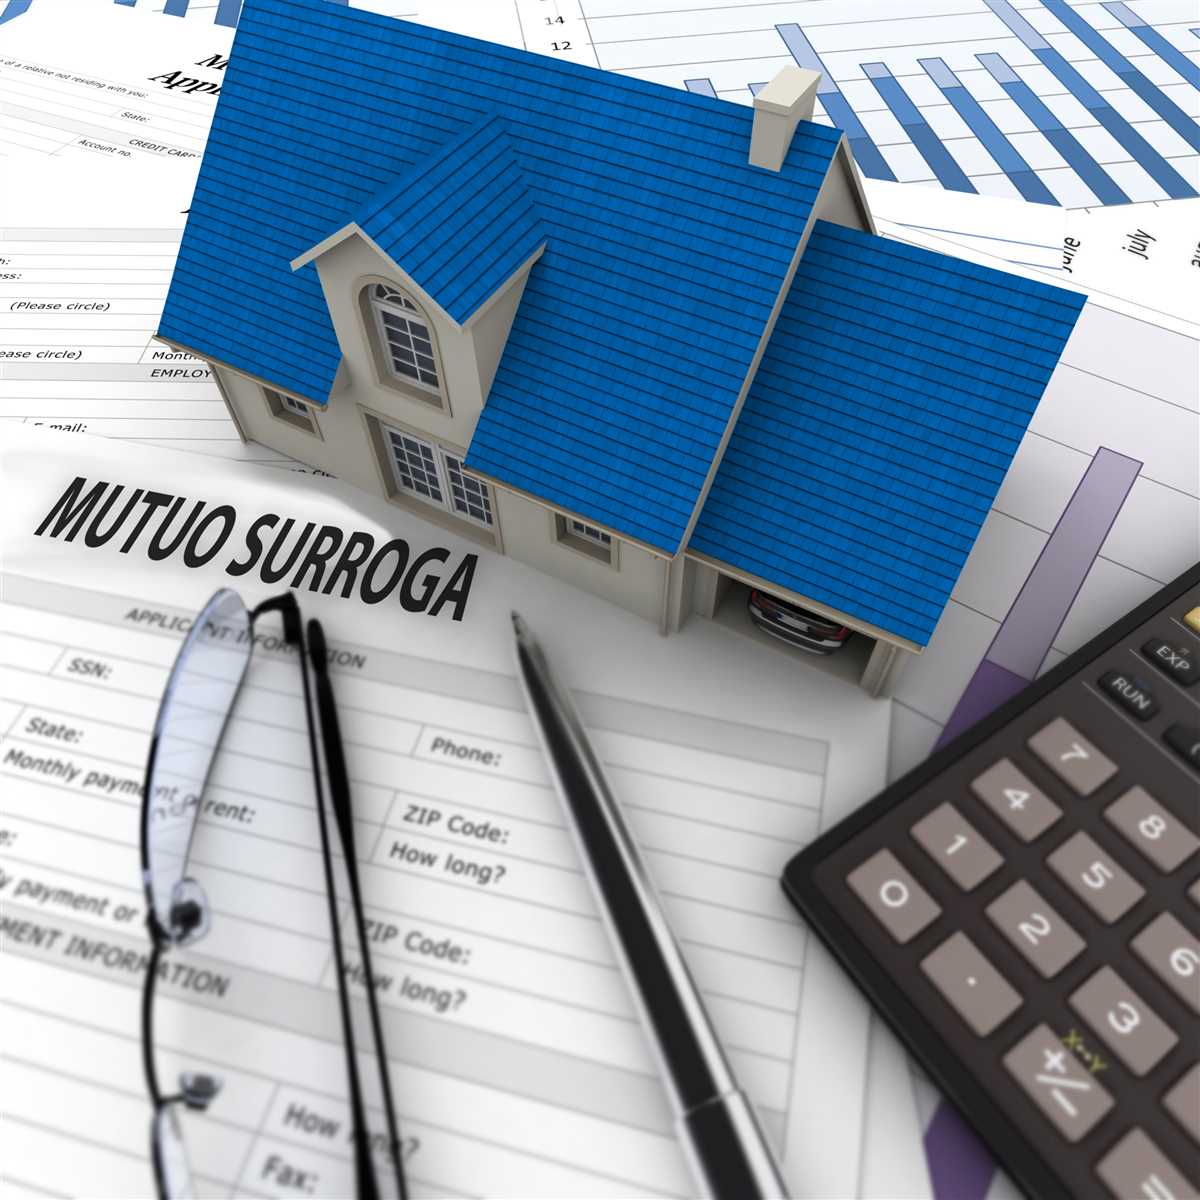 Prima casa e surroga: ecco i mutui piÃ¹ richiesti nel 2020